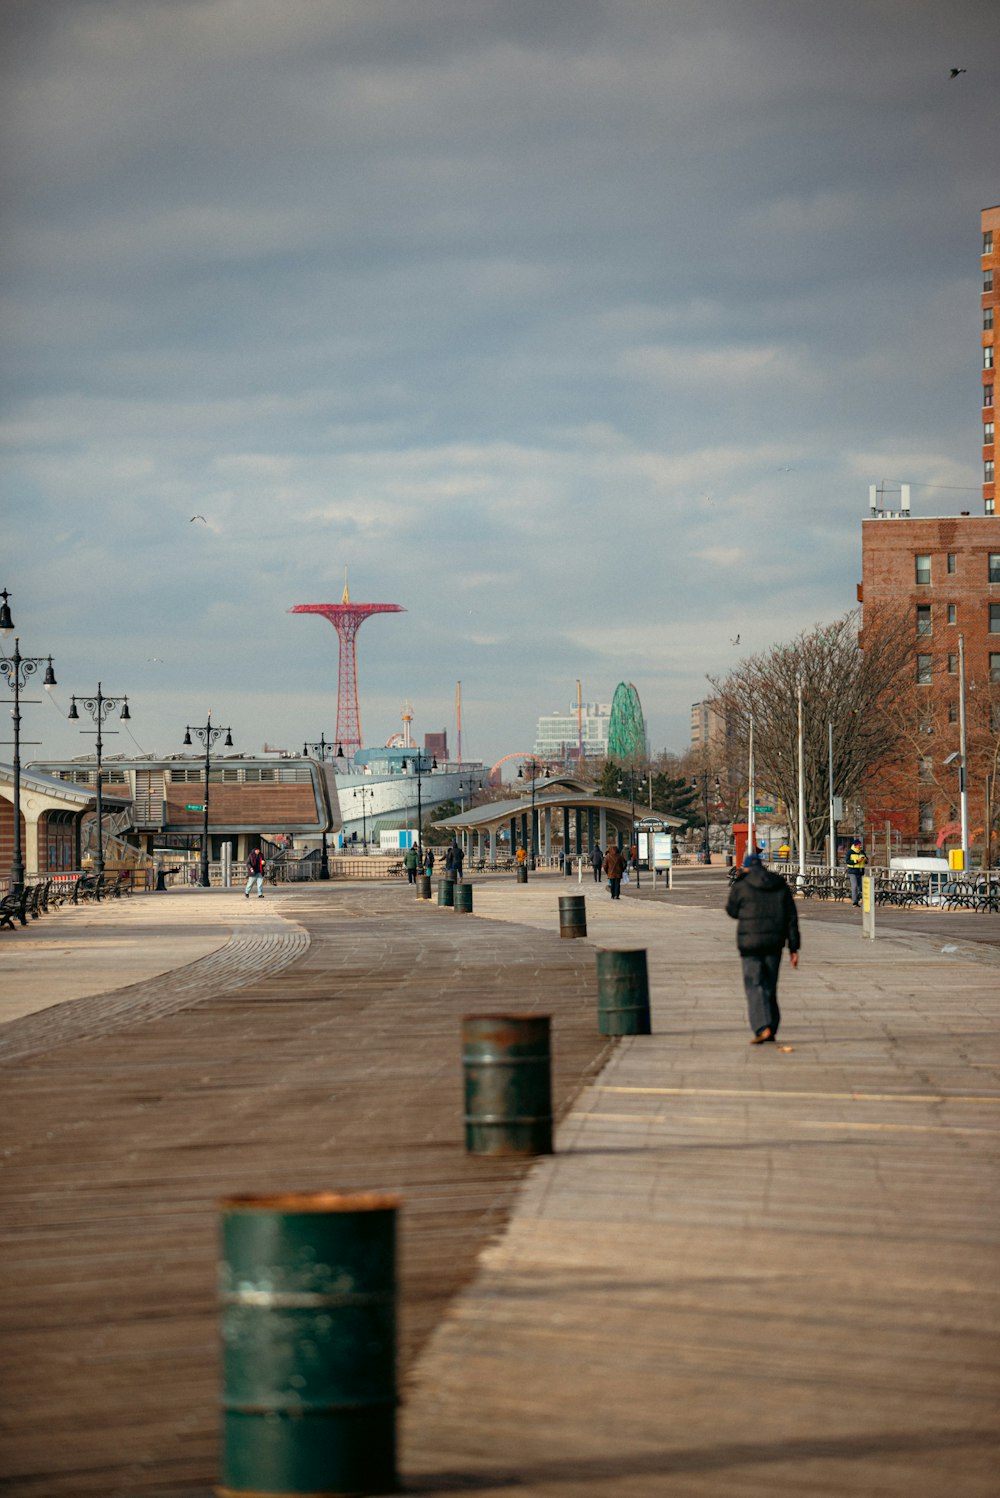 a person walking on a boardwalk near a city